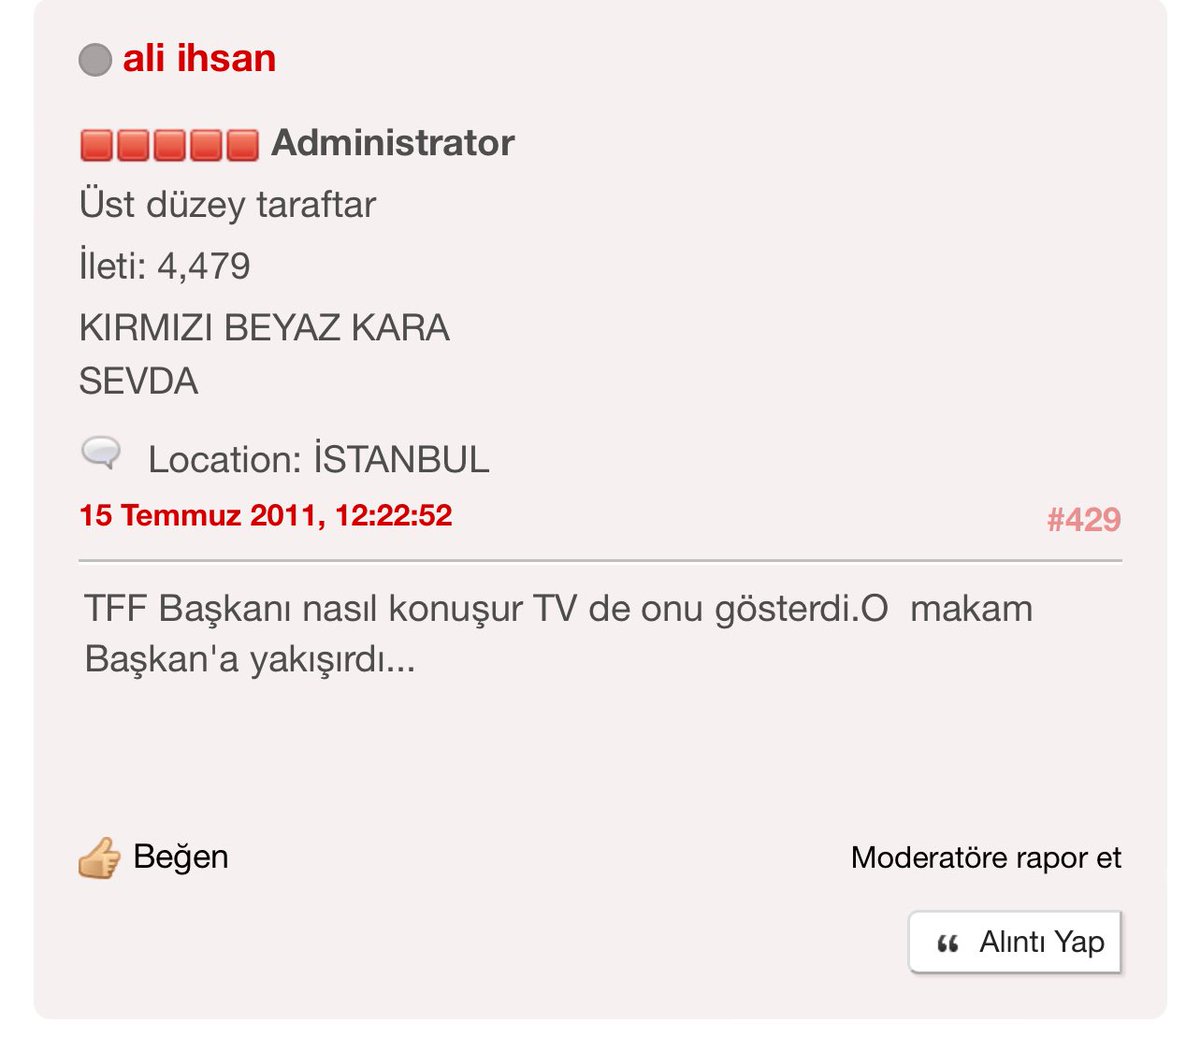 Samsunspor. biz’de 13 yıl önce @ismailuyanik_ss hakkında yapılmış yorum. Çok bekledik, sabrettik, bir gün dahi pes etmedik.